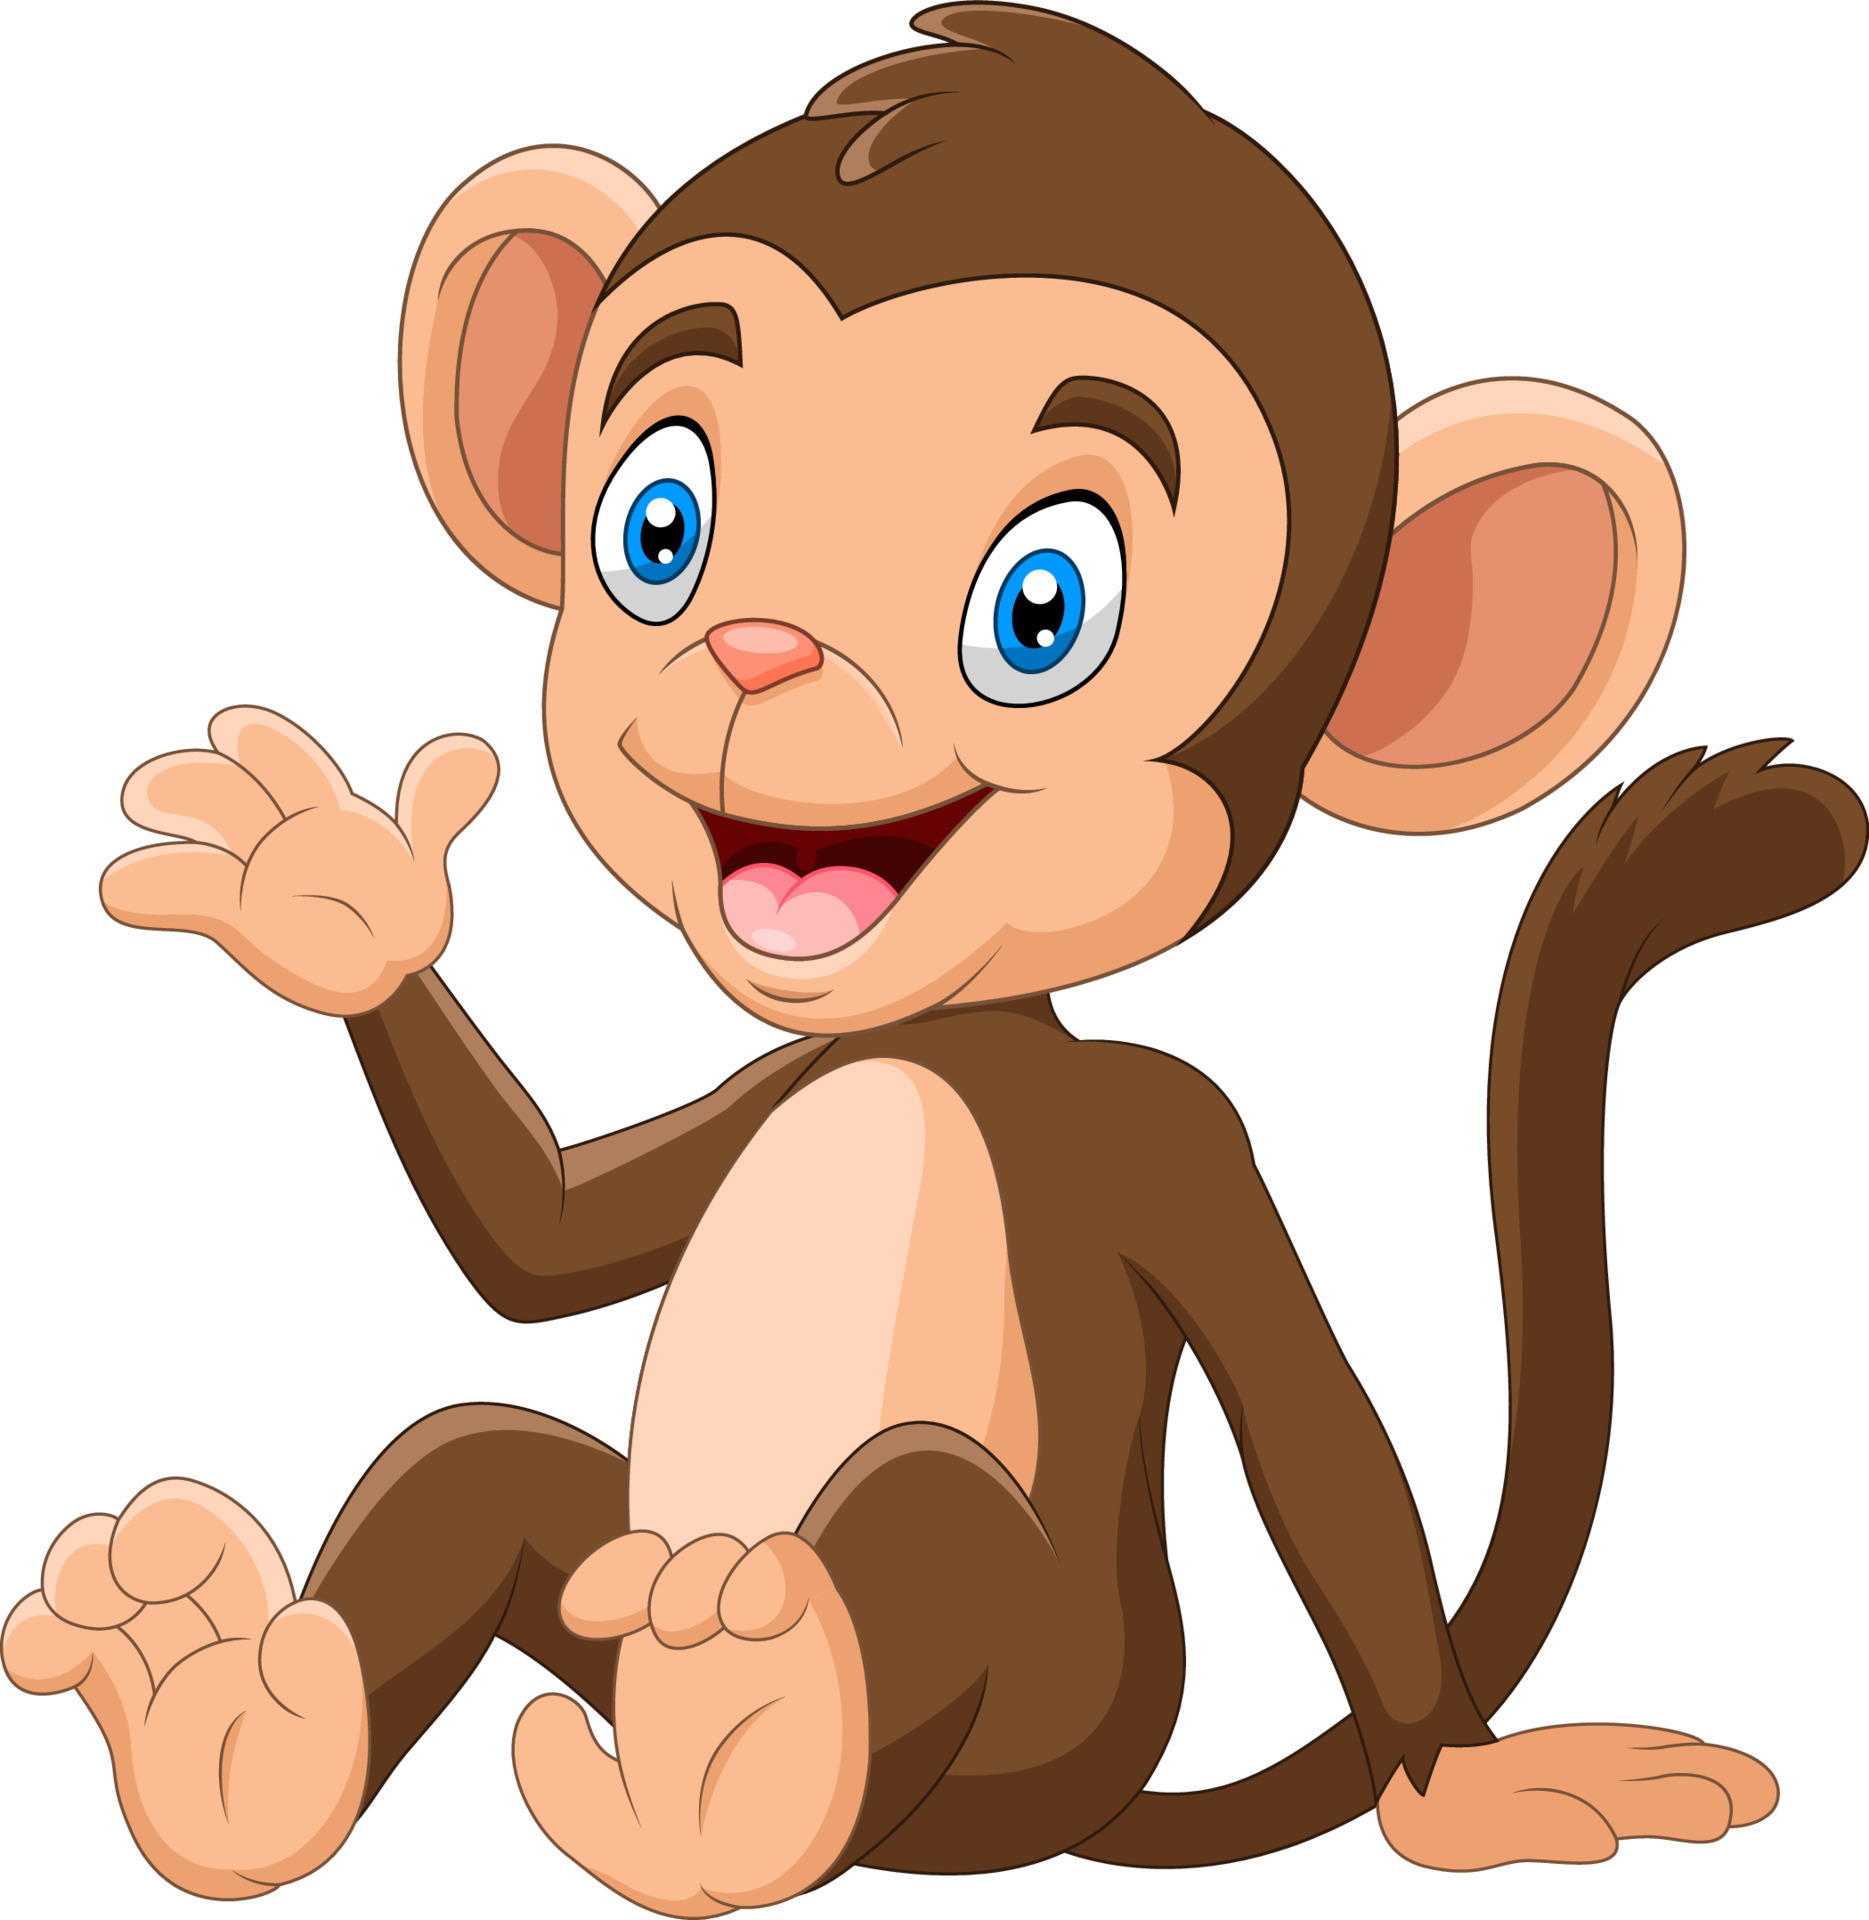 Macaco engraçado com um sorriso engraçado no zoológico